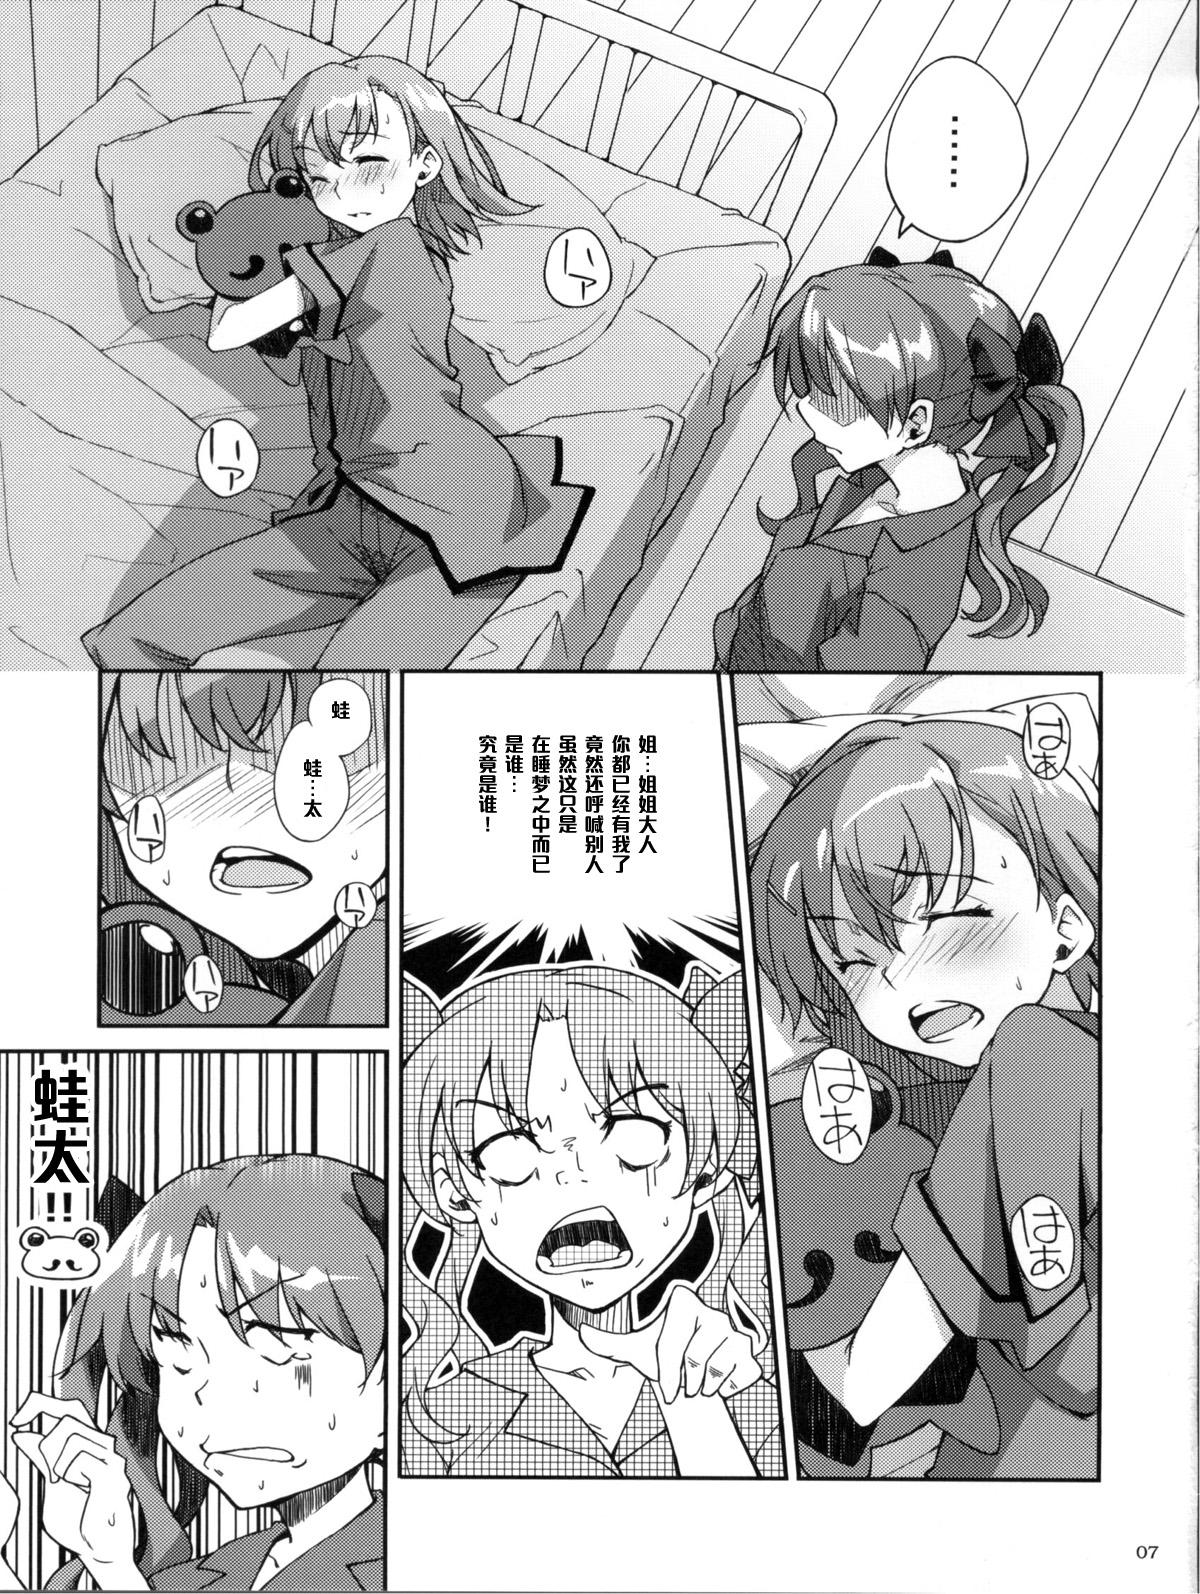 Passionate Desu no!! 2 - Toaru kagaku no railgun Screaming - Page 7